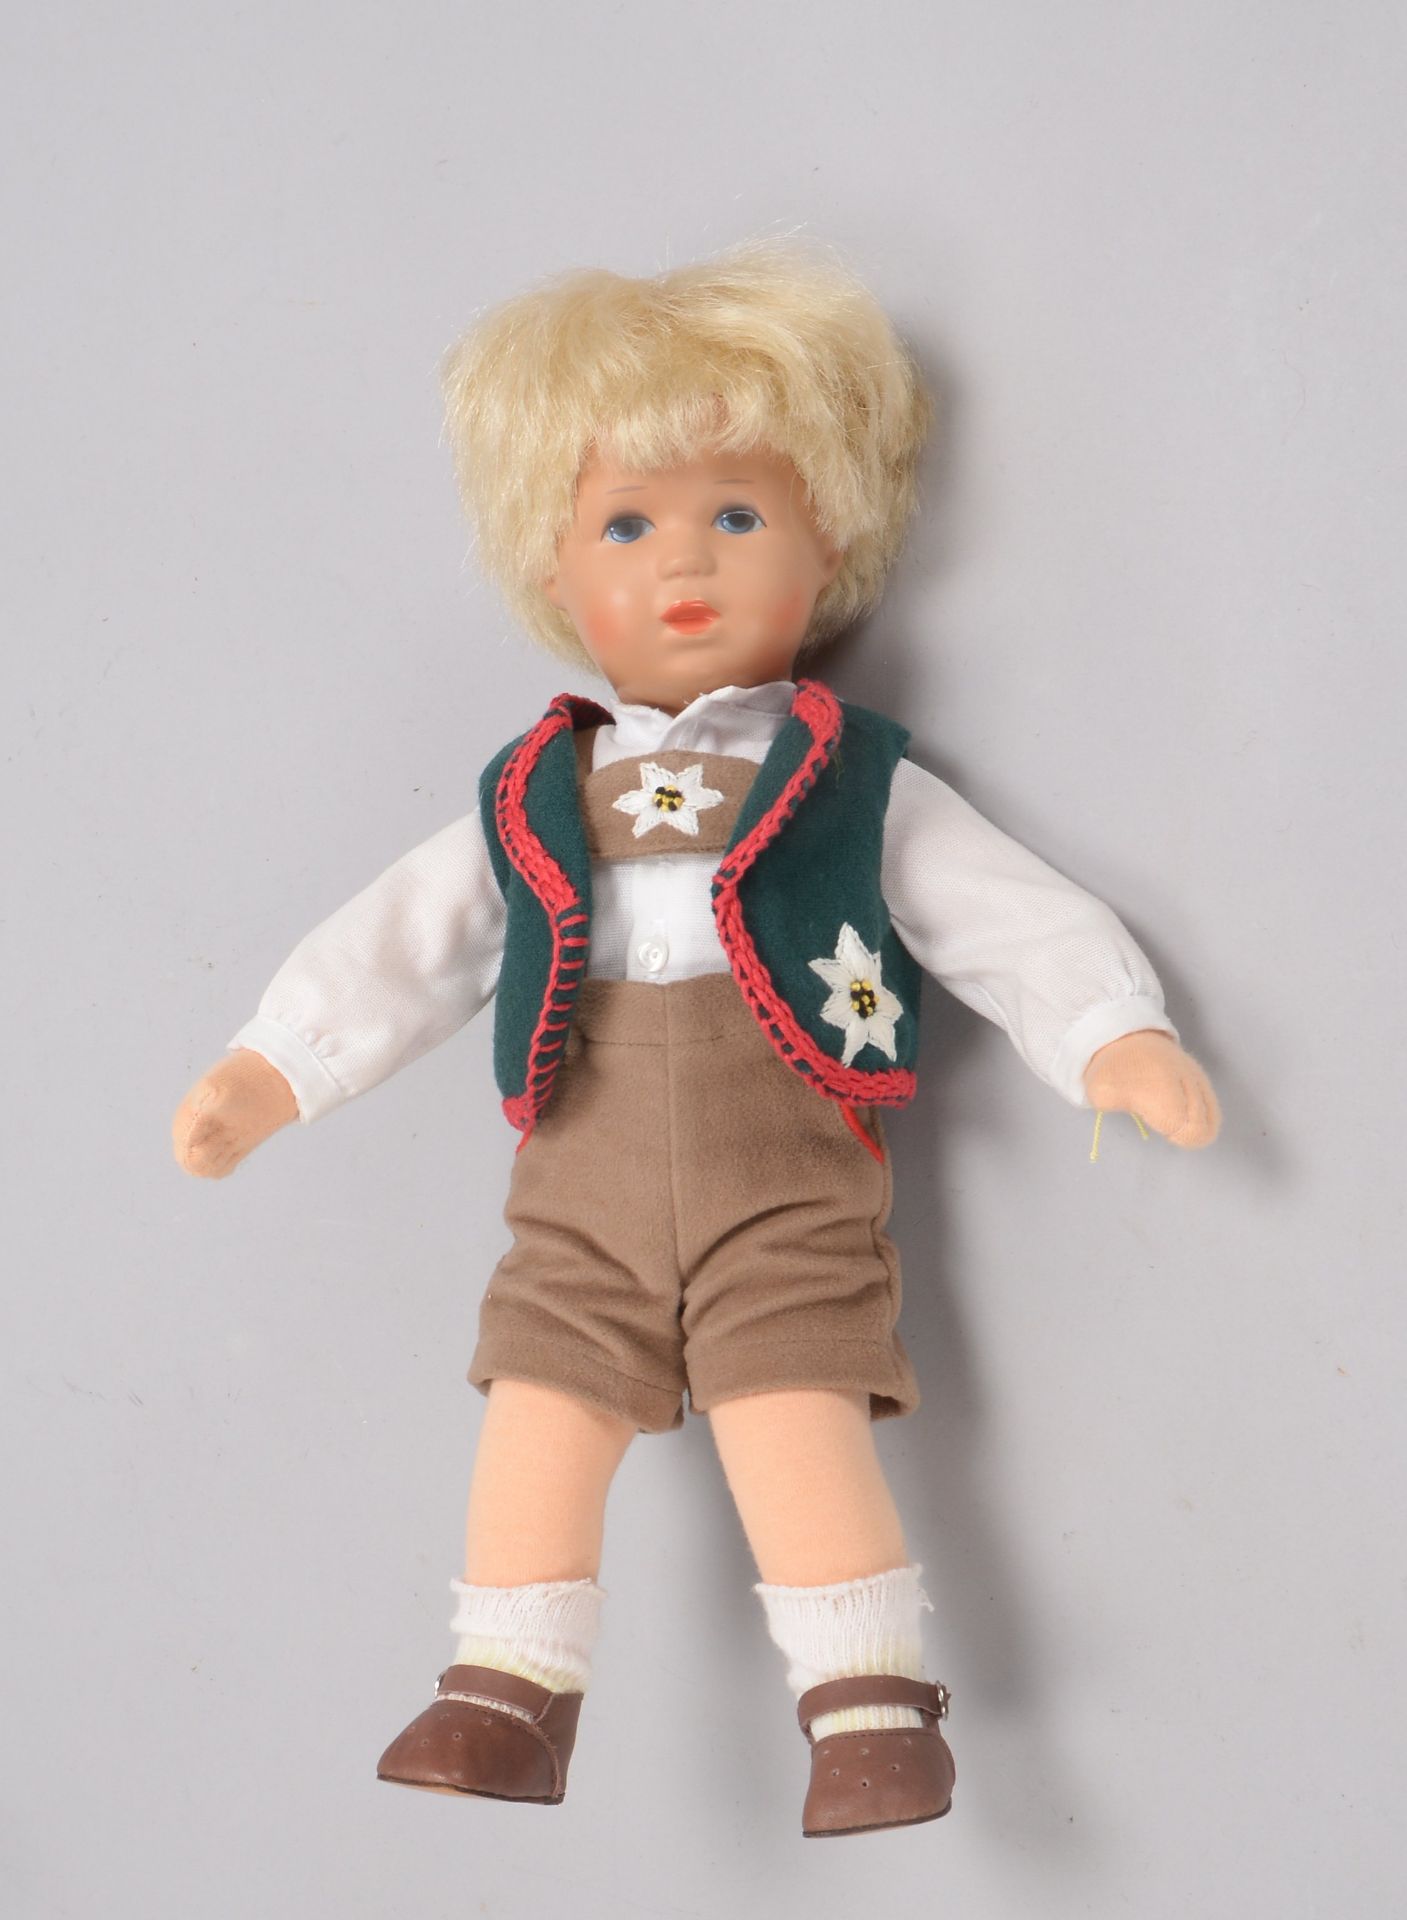 Käthe Kruse, Sammlerpuppe, 'Junge', Kunststoffkopf und Stoffkörper, Puppe mit Bekleidung; Höhe 33 cm - Bild 2 aus 2